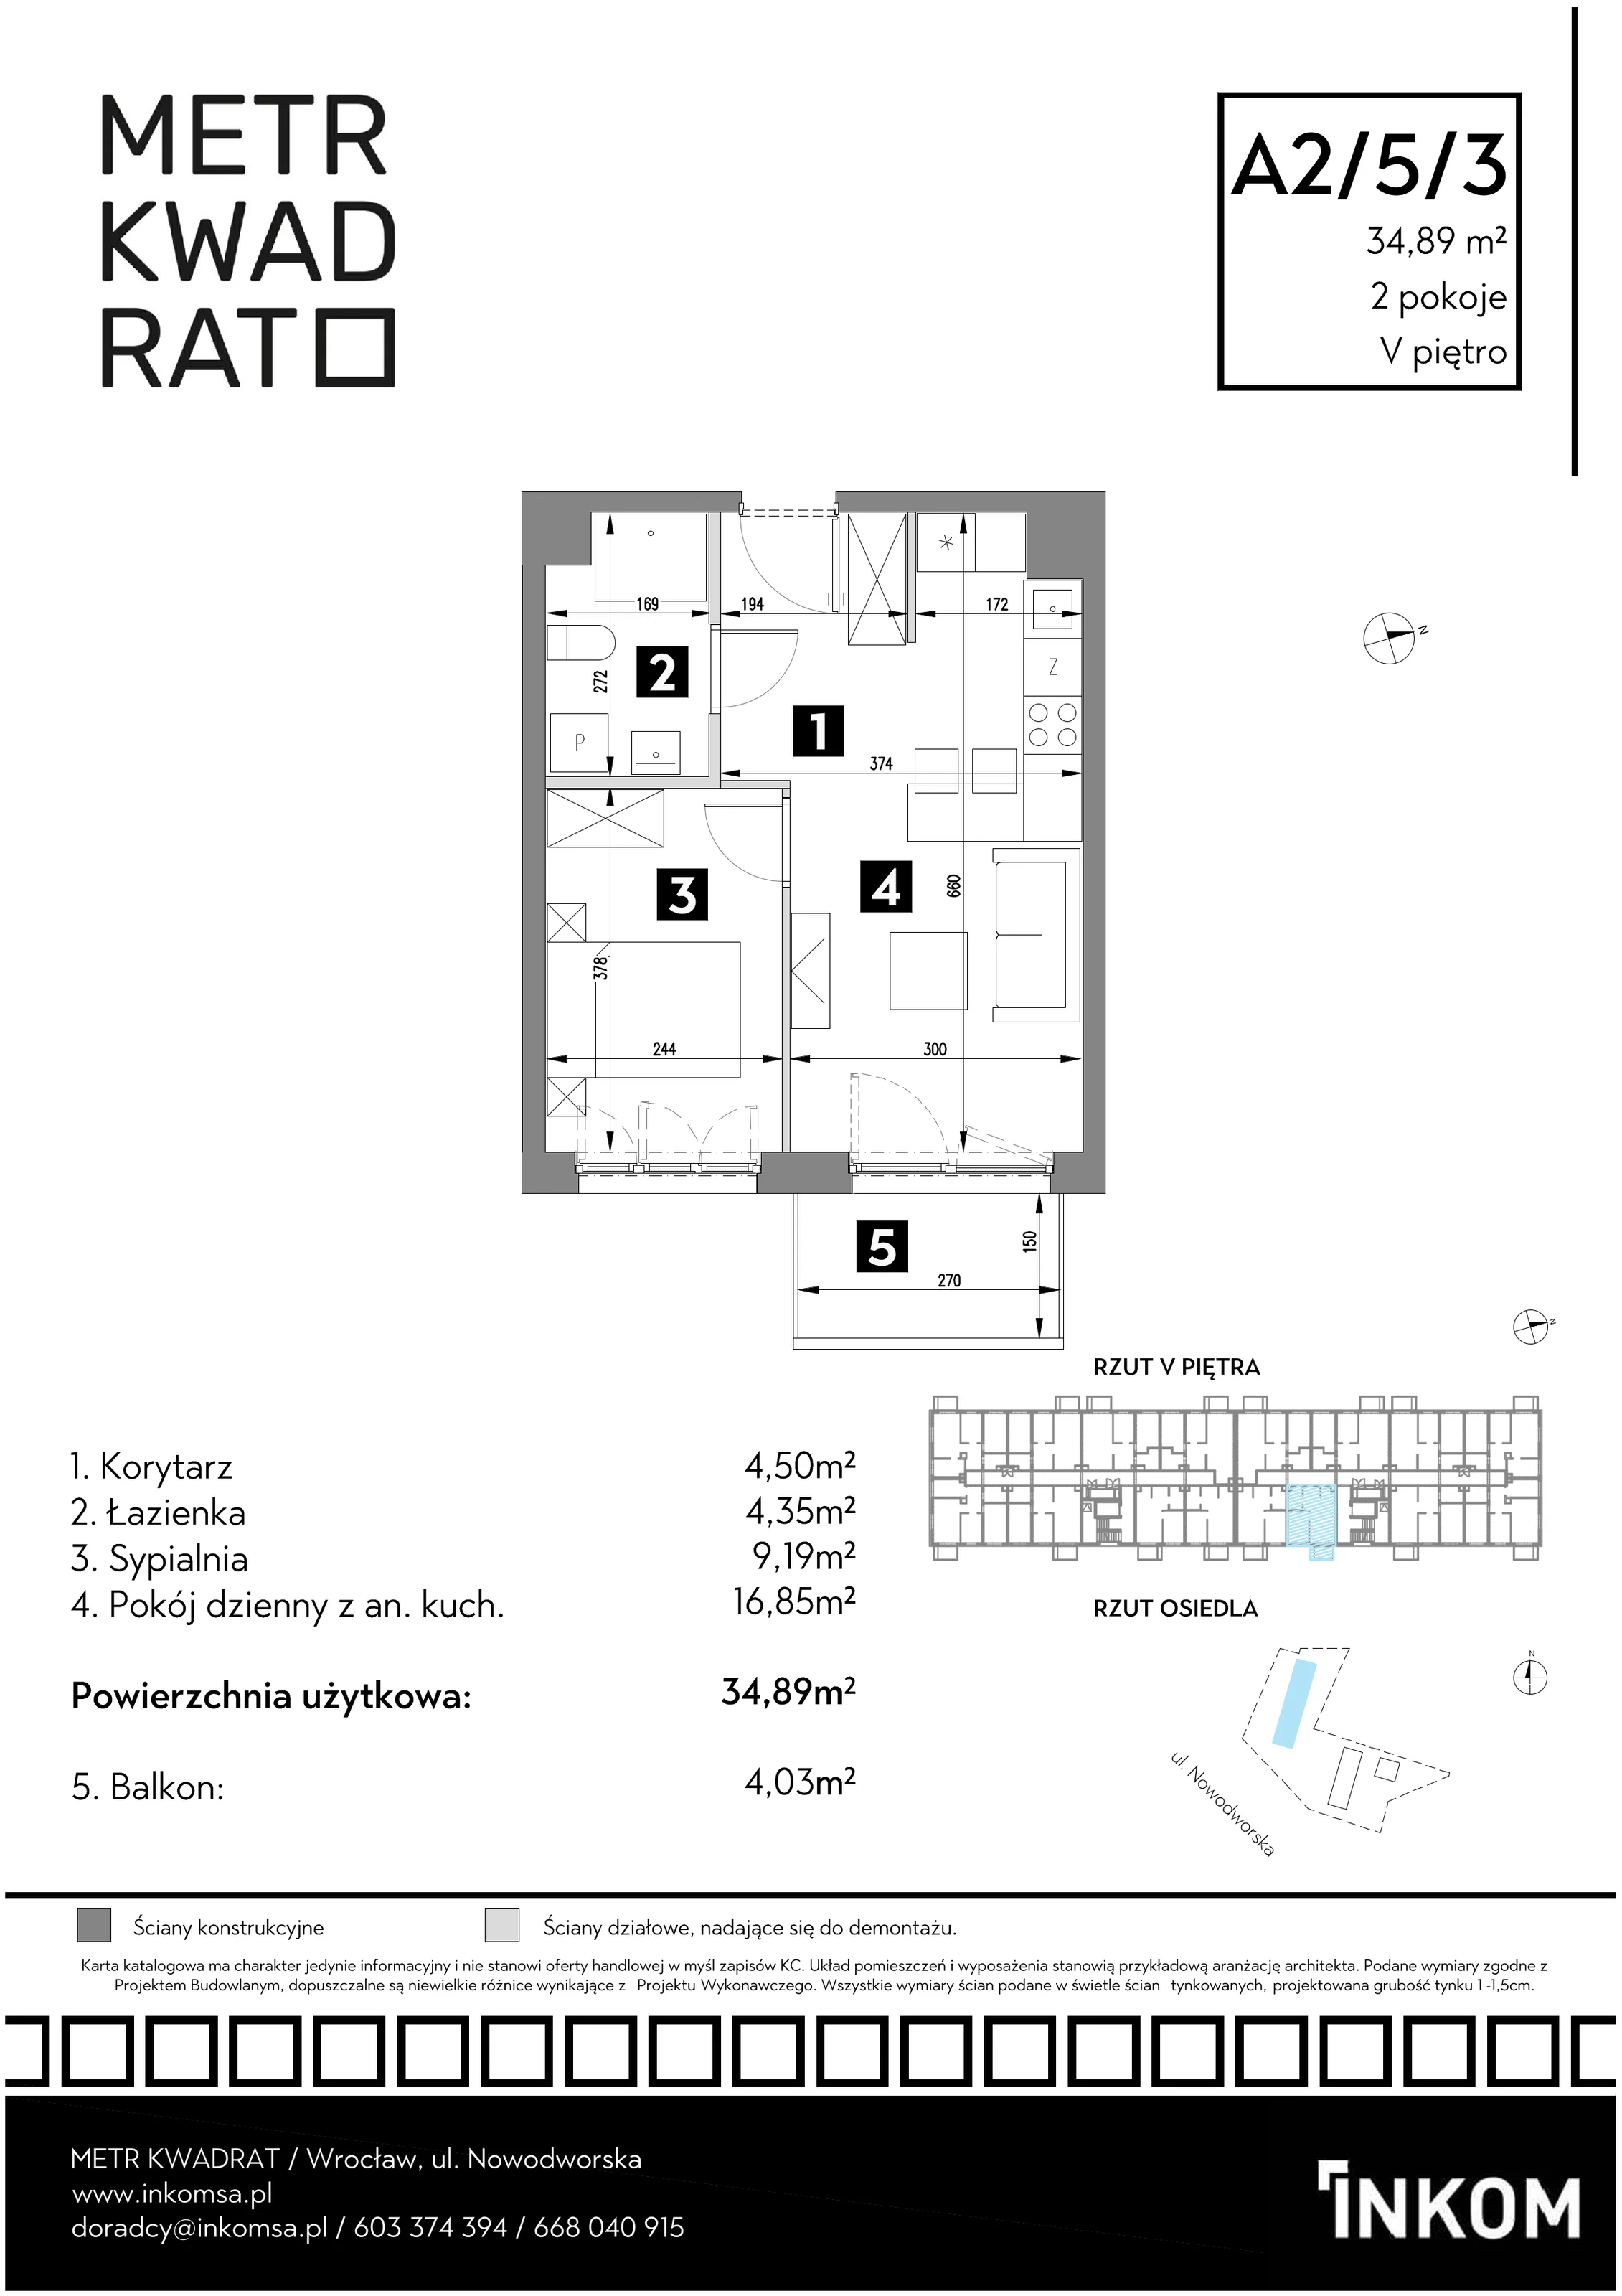 Mieszkanie 34,89 m², piętro 5, oferta nr A2/5/3, Metr Kwadrat, Wrocław, Nowy Dwór, ul. Nowodworska 17B